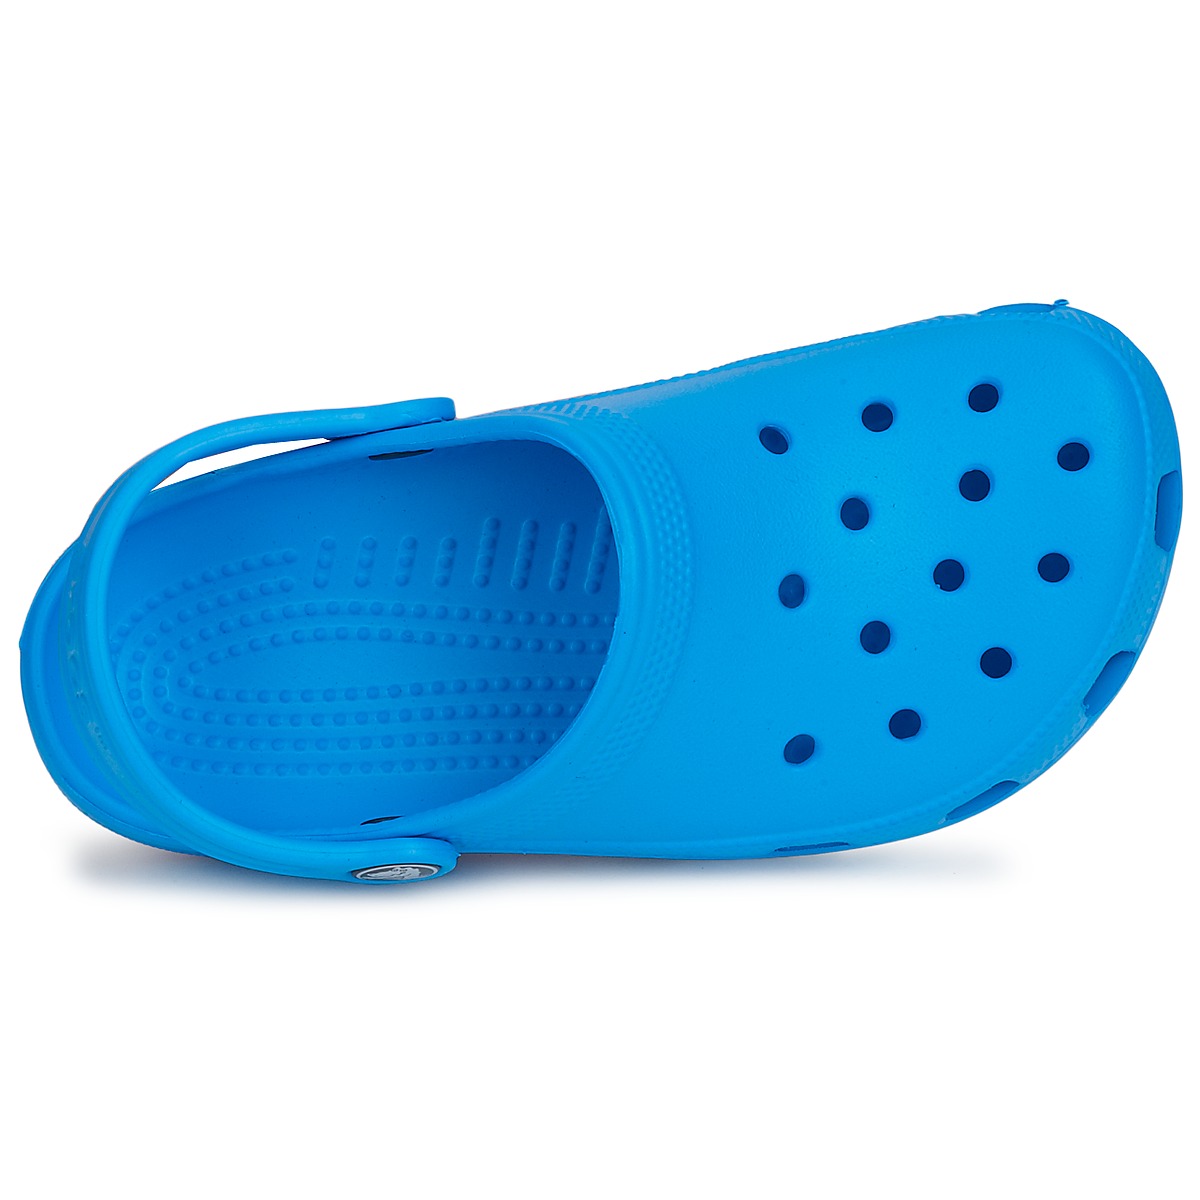 Crocs Bleu CLASSIC CLOG KIDS frdpme3n